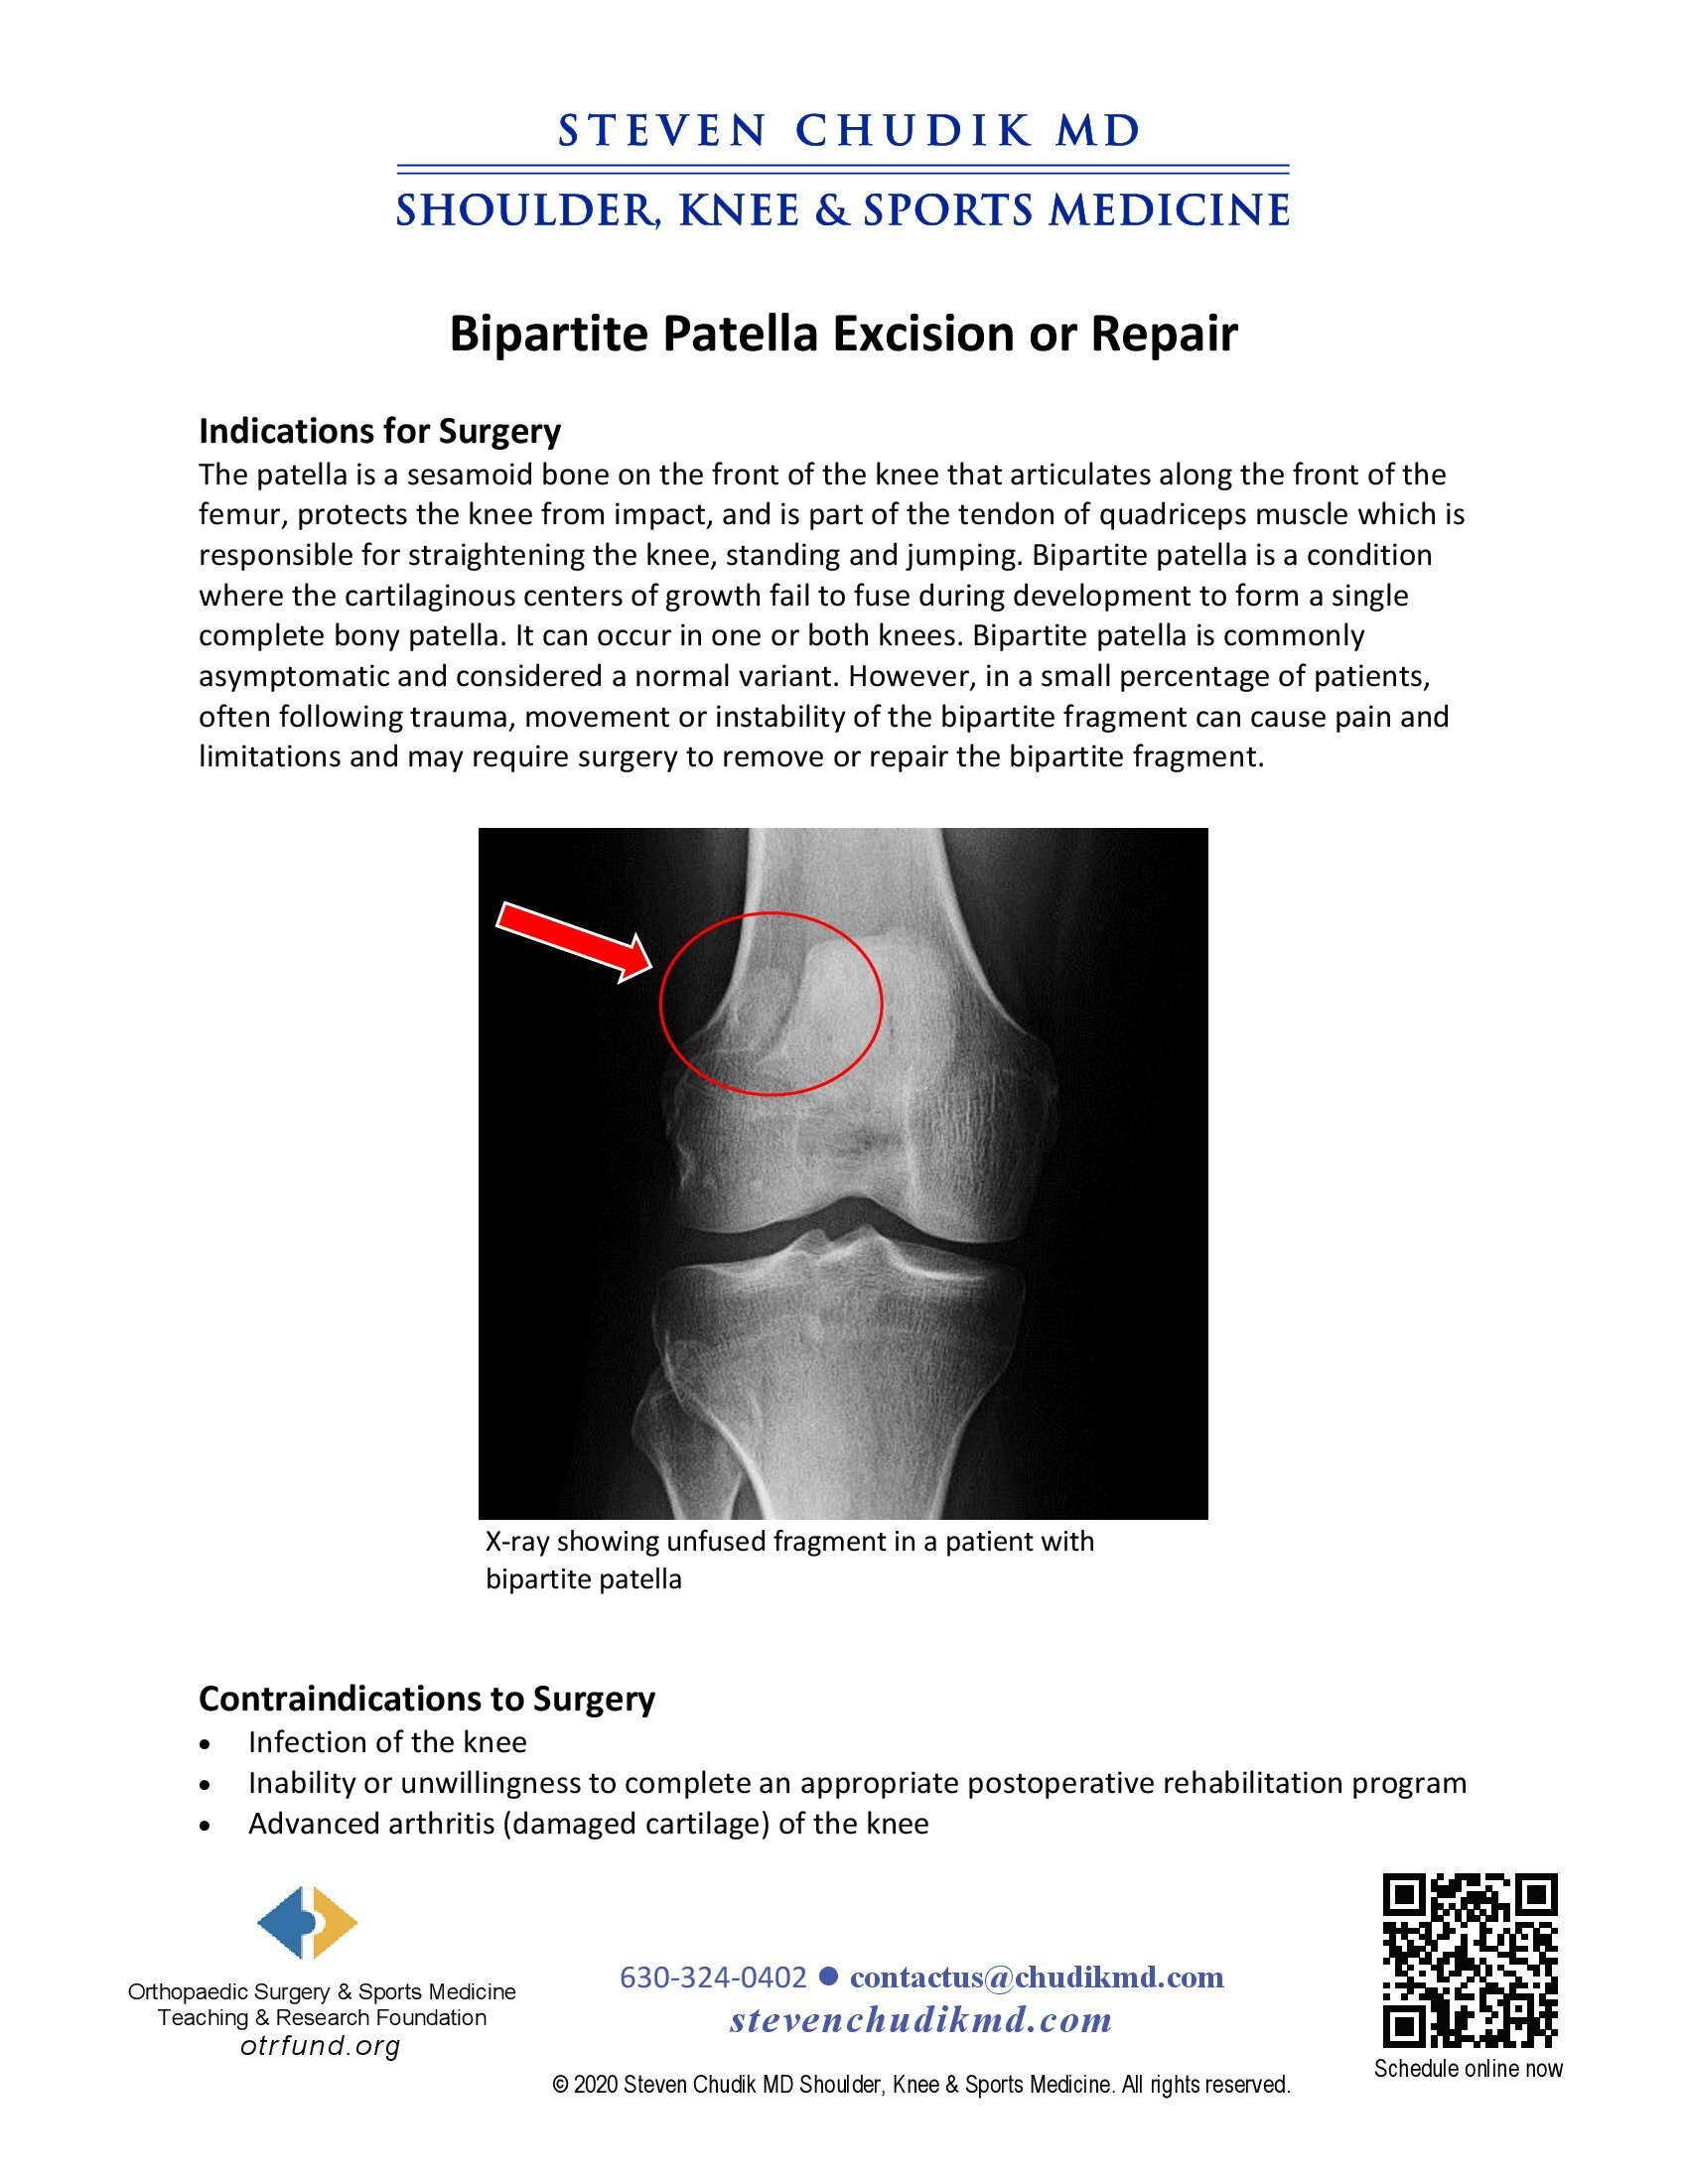 Bipartite Patella Excision or Repair - Steven Chudik MD